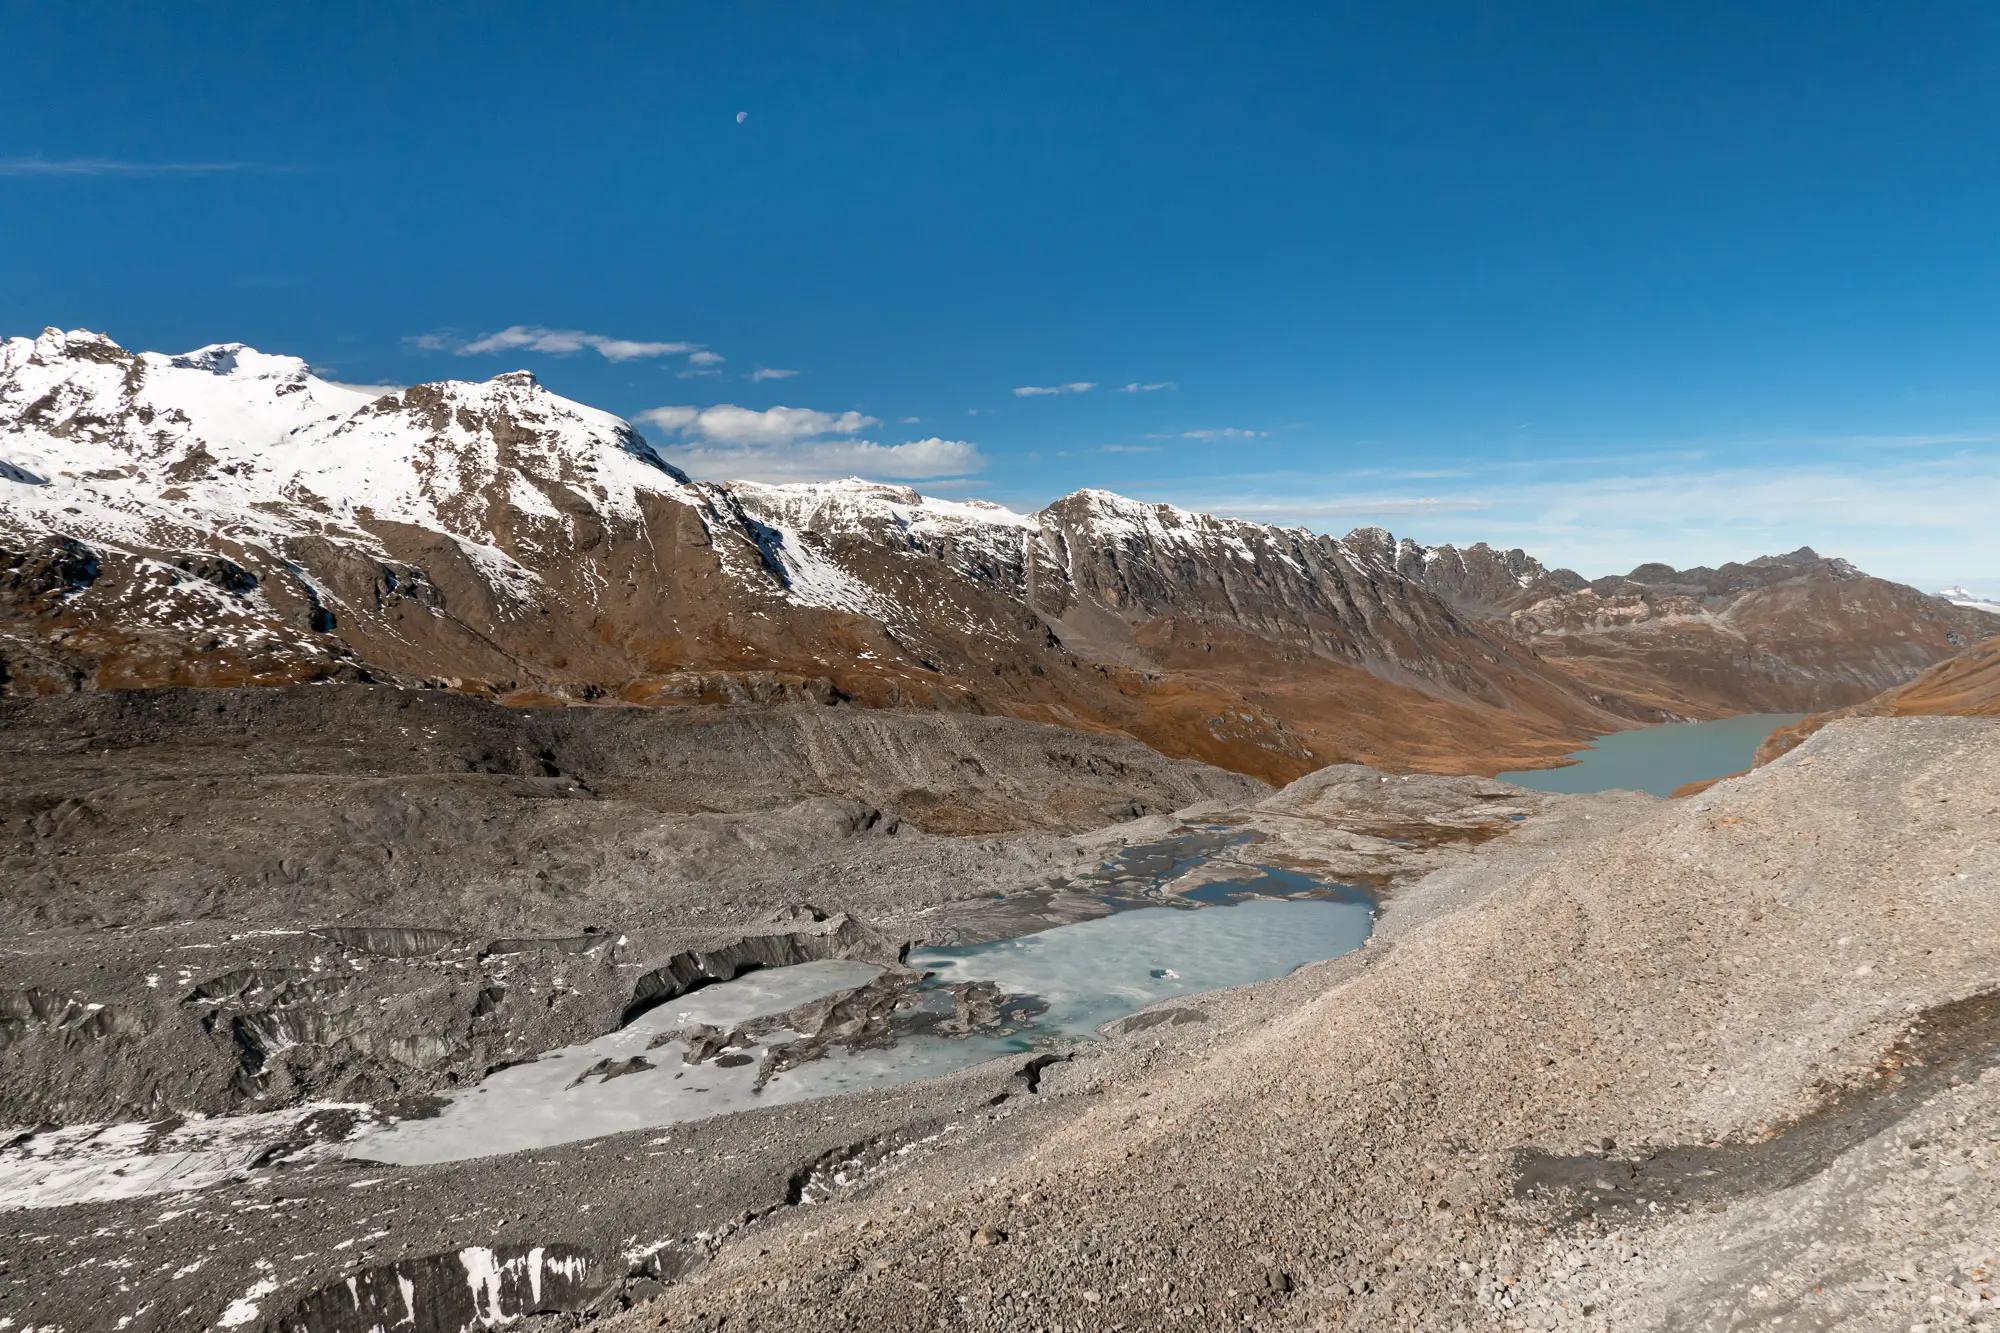 Gletschersee am Ende des Glacier de Cheilon, entstanden durch das Abschmelzen des Gletschers